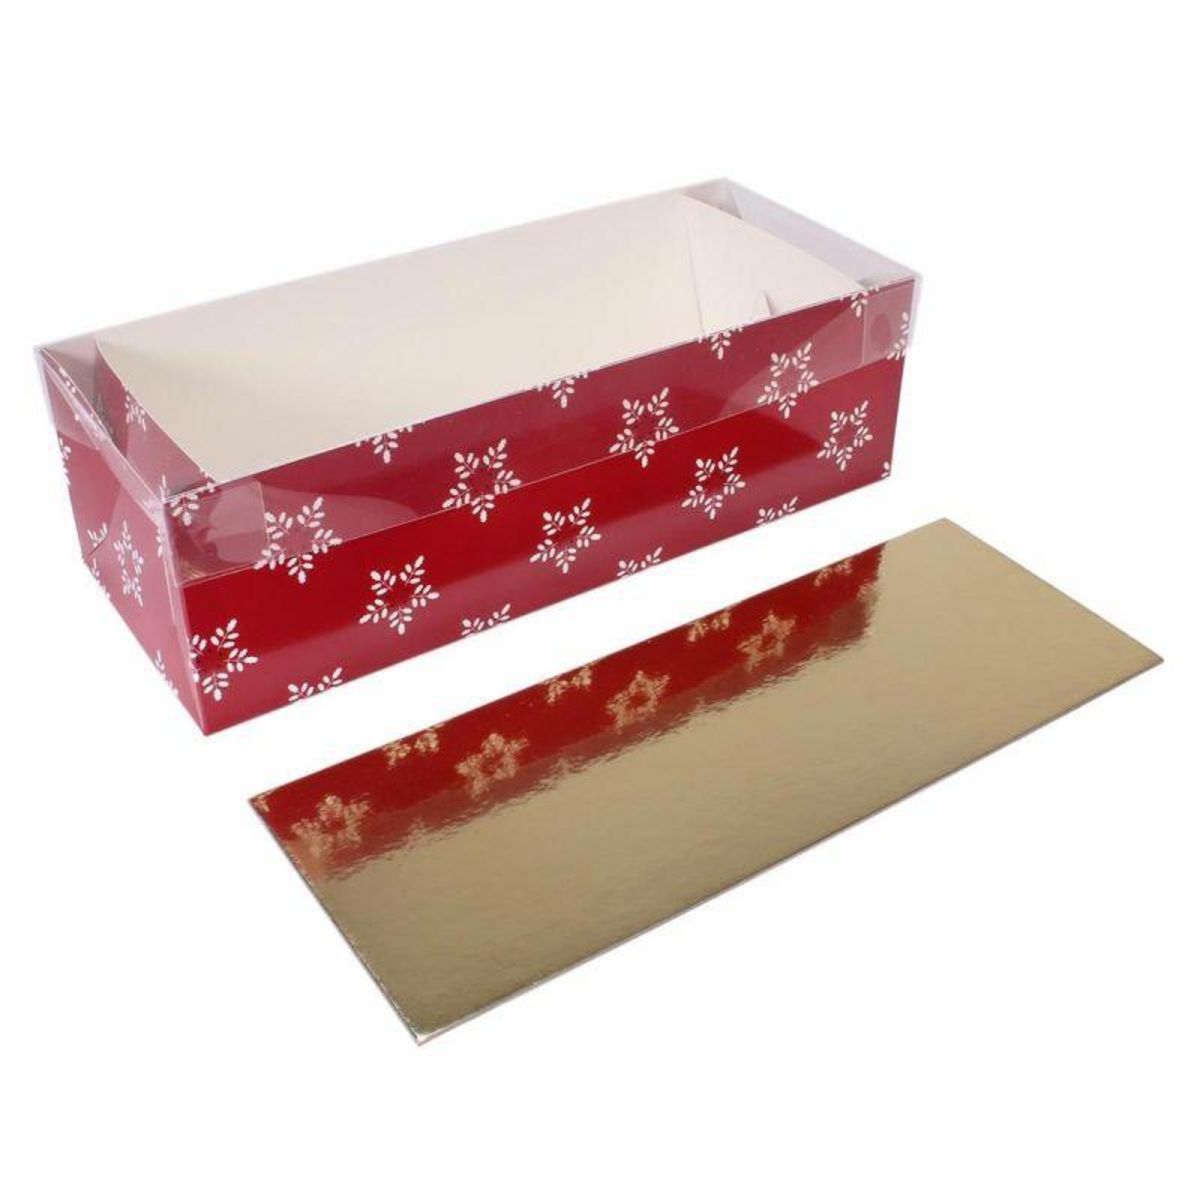 Boîtes à bûche de Noël - Achat / Vente de boite à bûche de noël